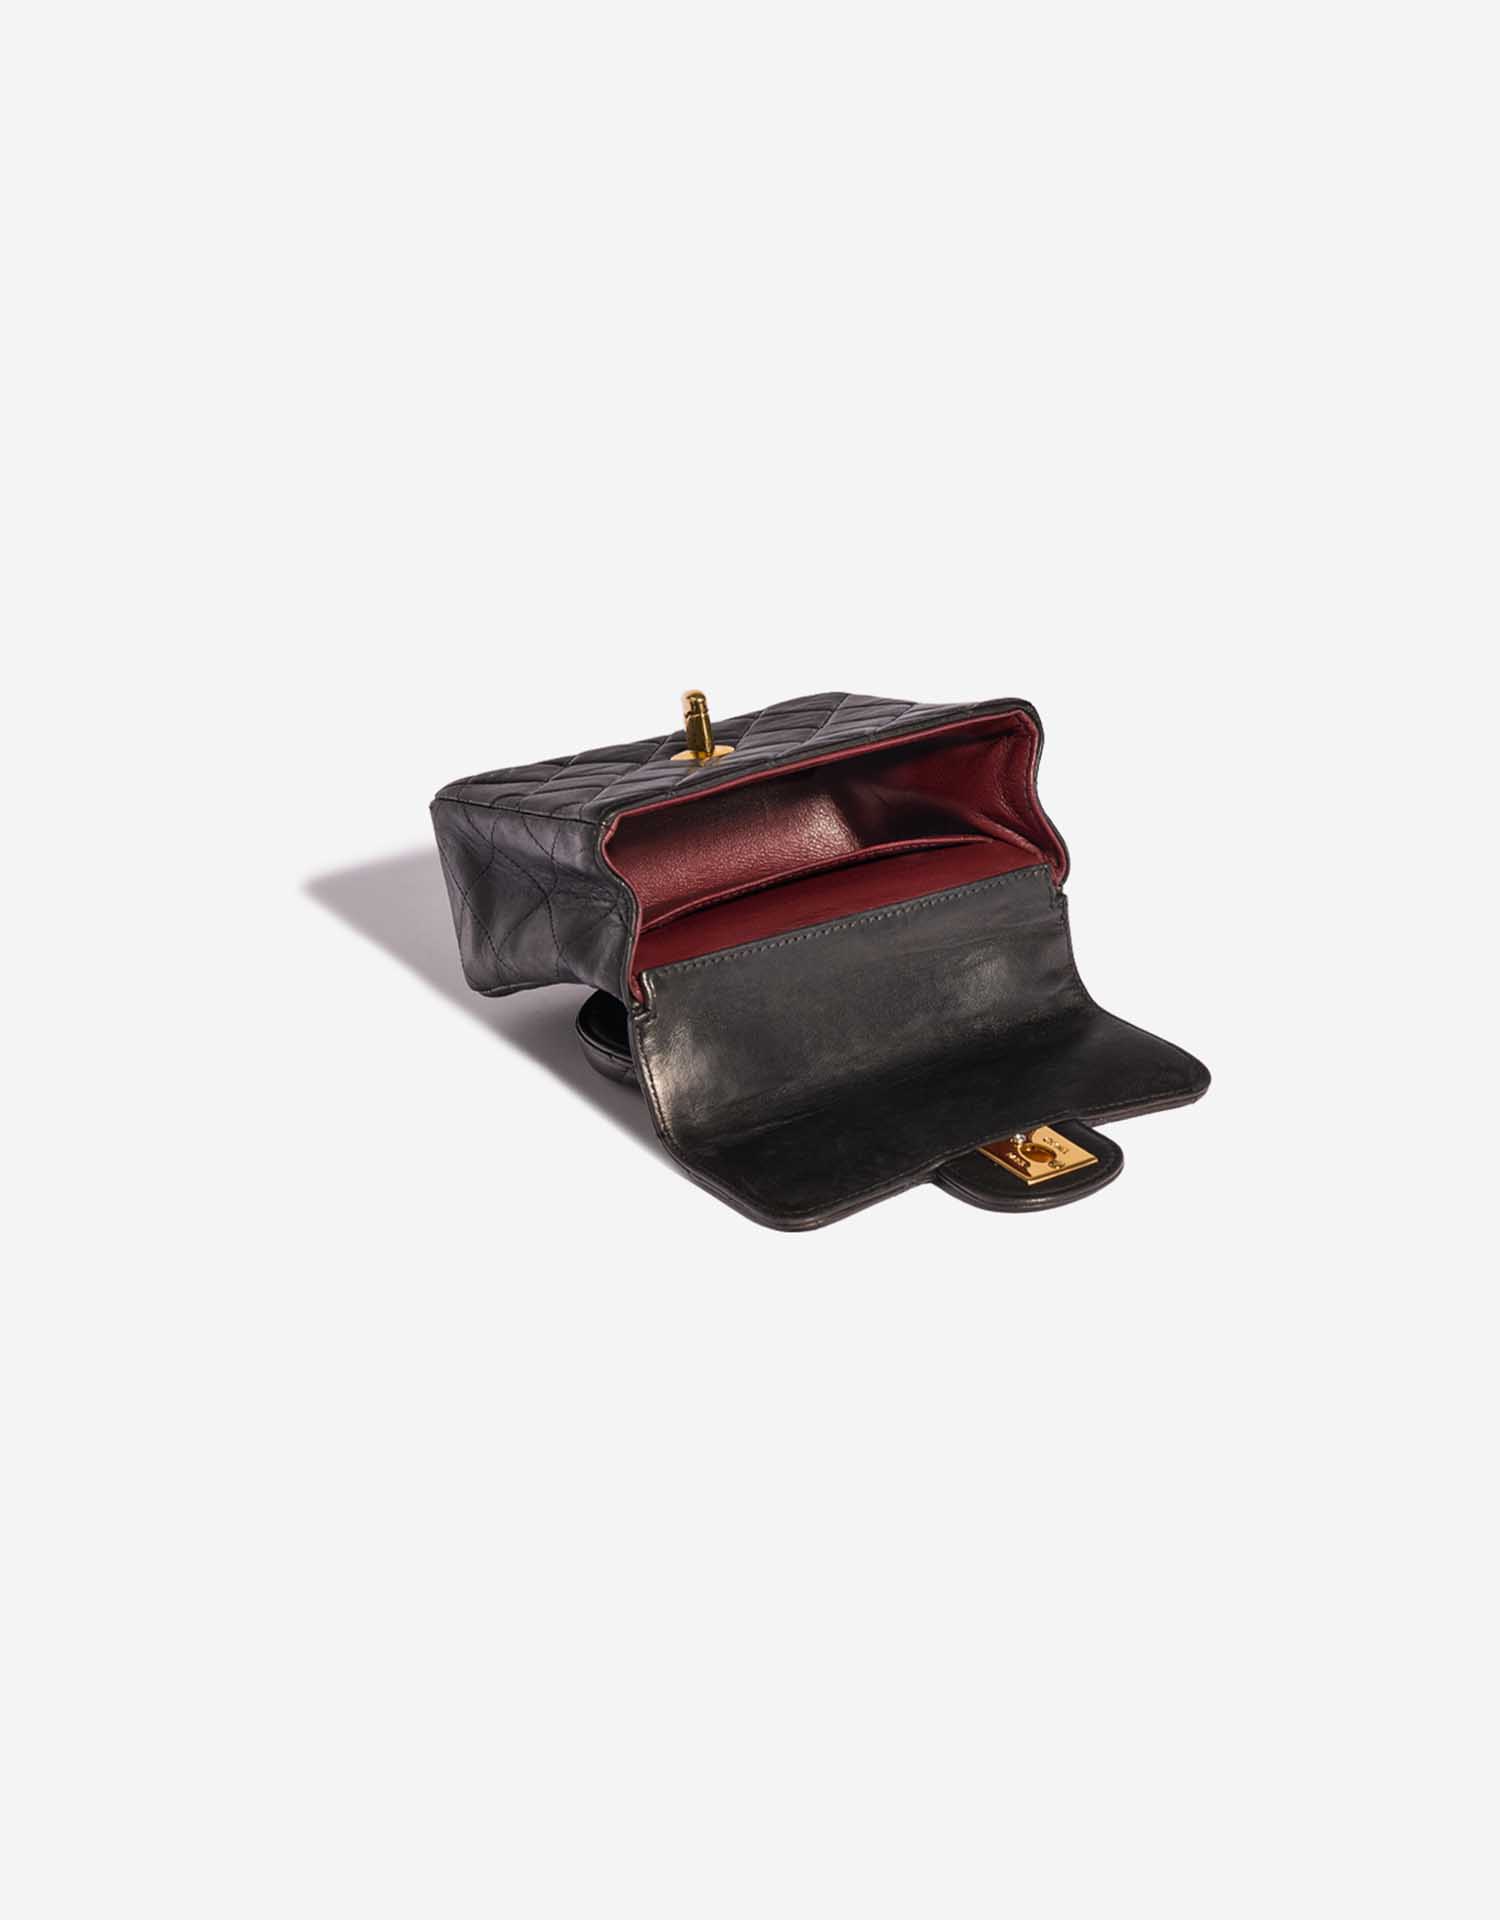 Sac Chanel d'occasion Timeless Poignée Petit Agneau Noir Noir Intérieur | Vendez votre sac de créateur sur Saclab.com